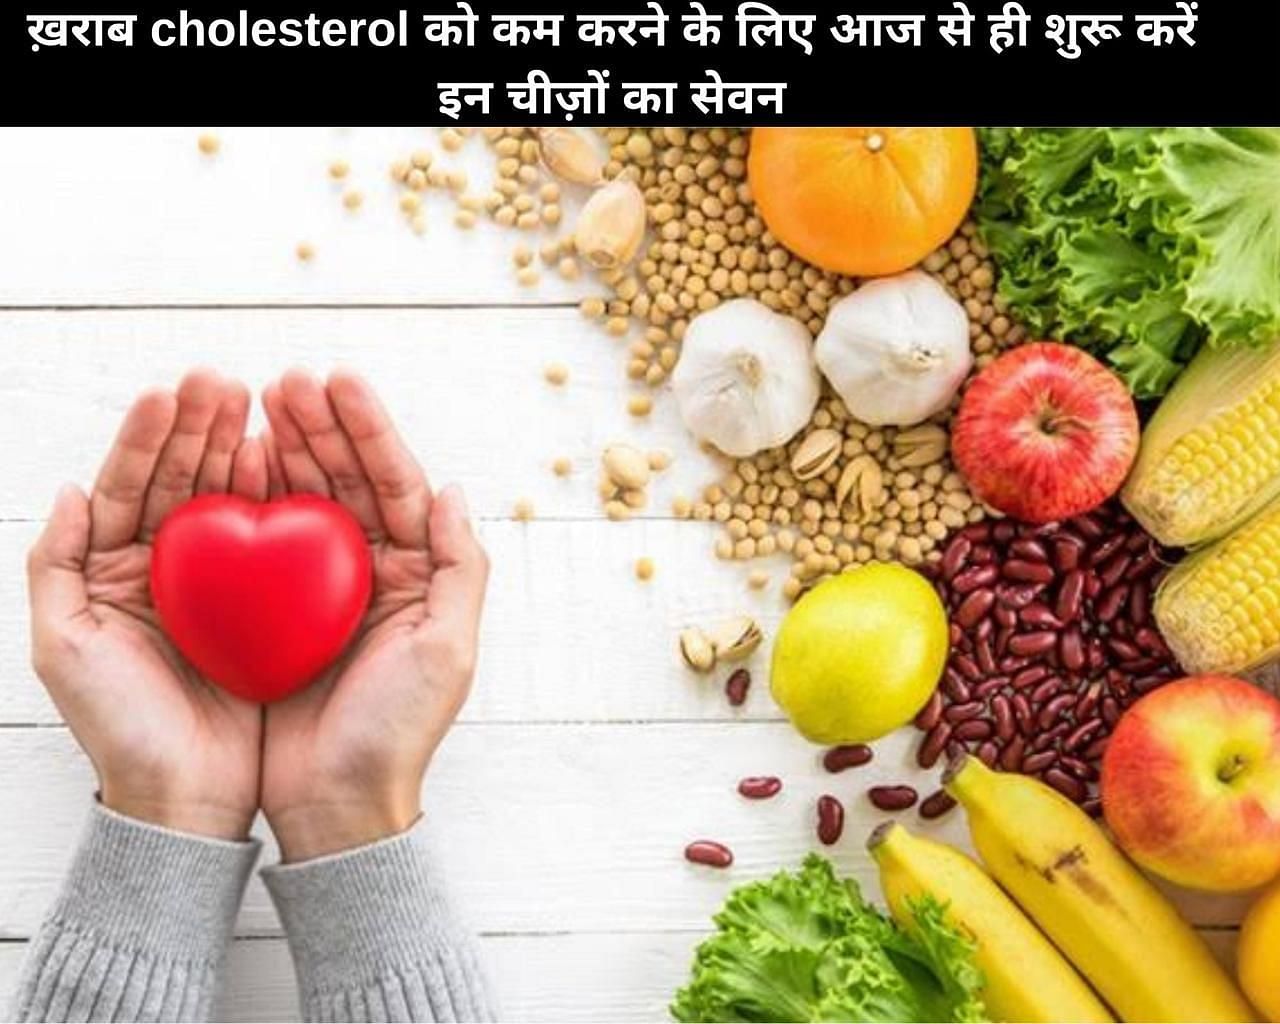 ख़राब cholesterol को कम करने के लिए आज से ही शुरू करें इन चीज़ों का सेवन (फोटो - sportskeedaहिन्दी)